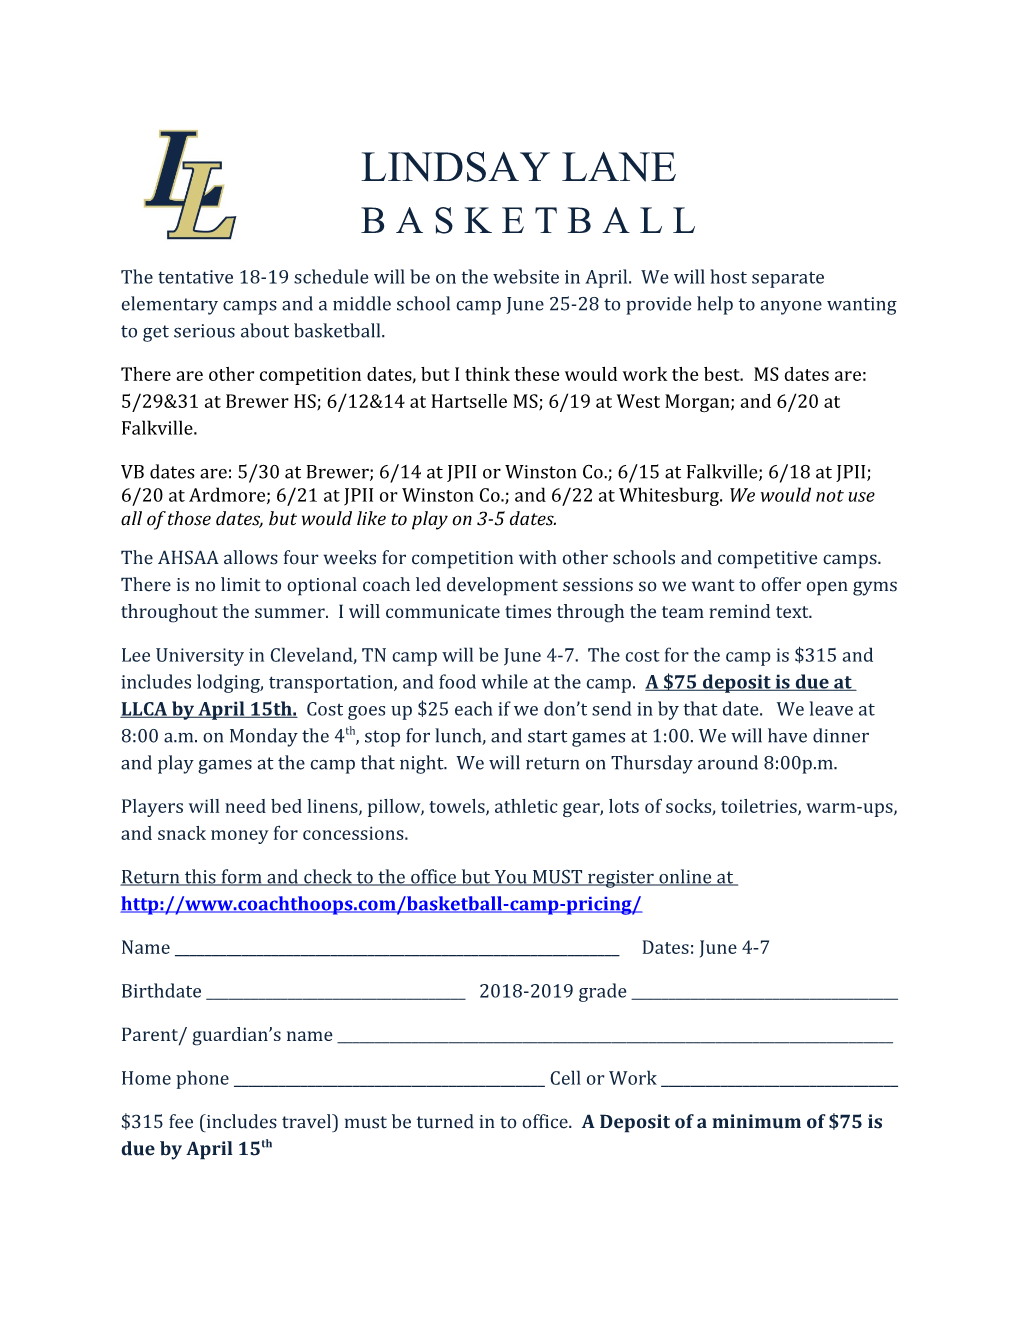 Lindsay Lane Basketball